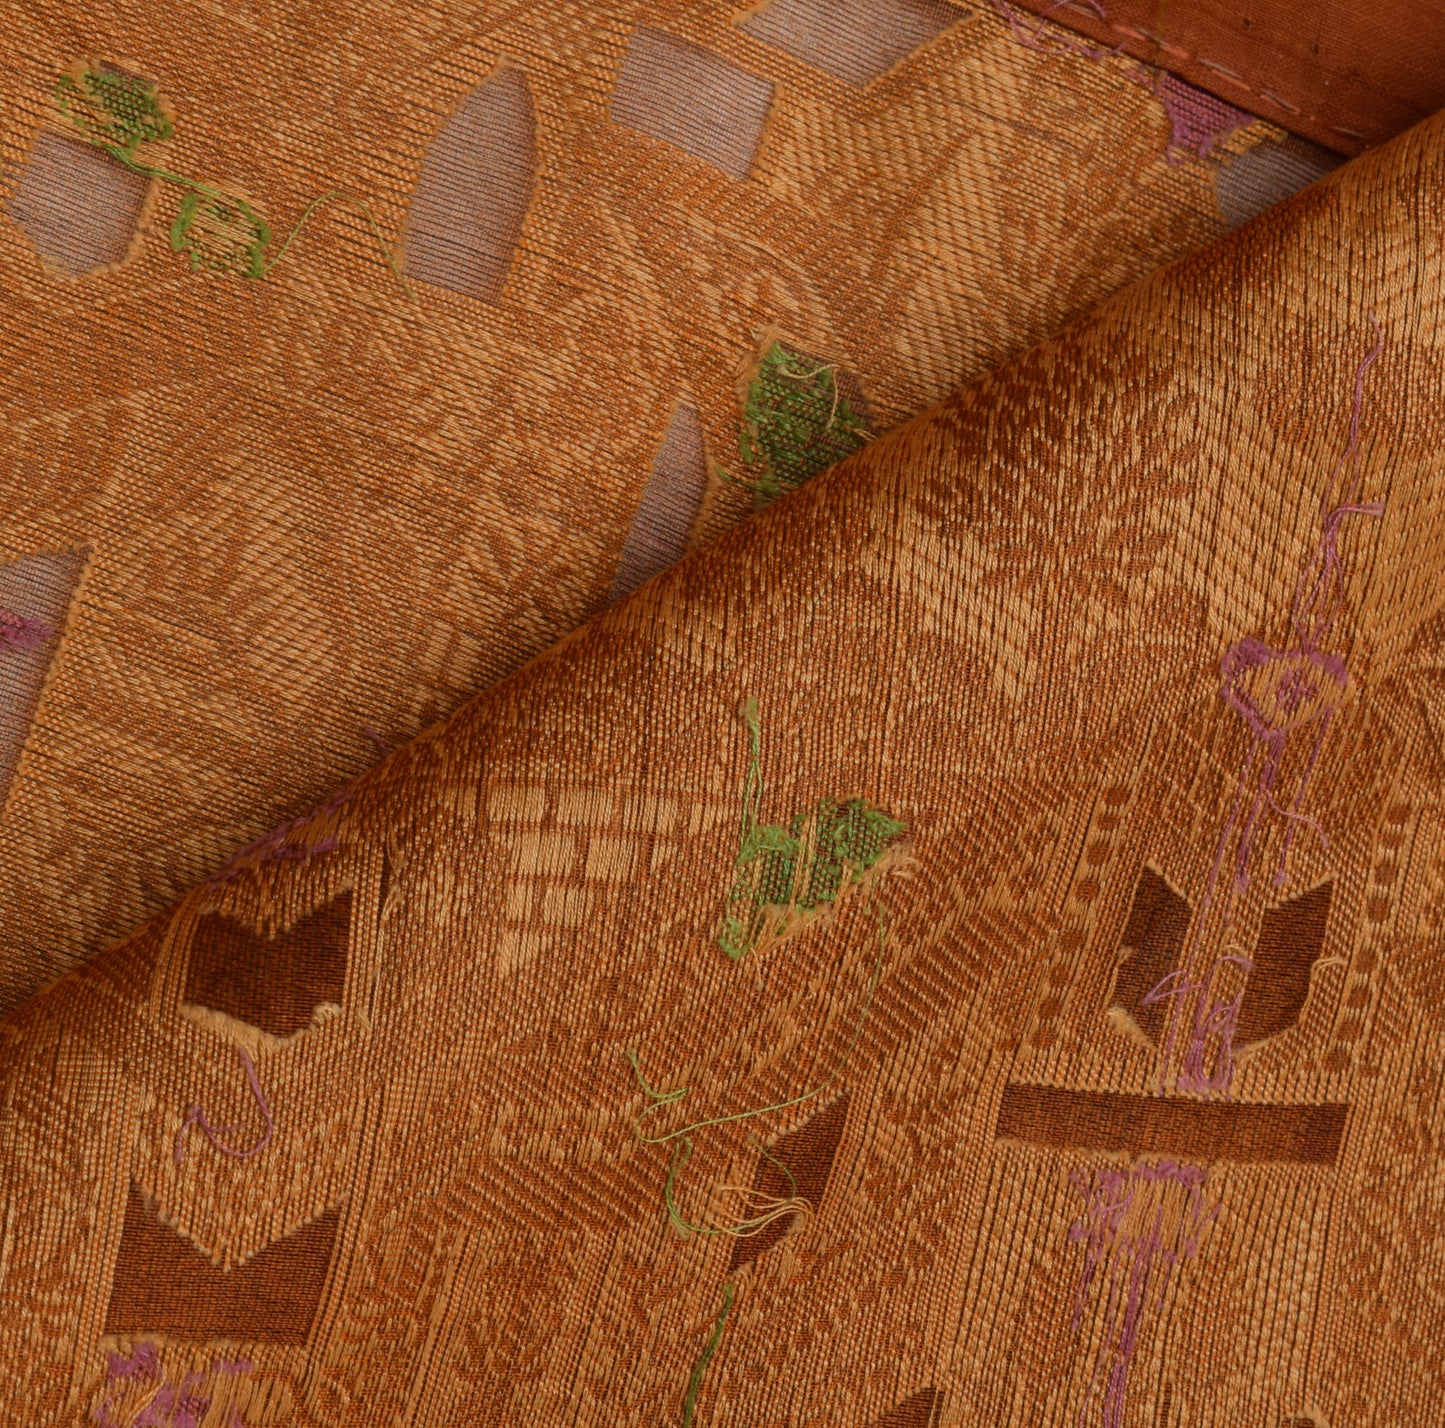 Sushila Vintage Brown Saree 100% Pure Silk All Over Woven Hut Sari Decor Fabric